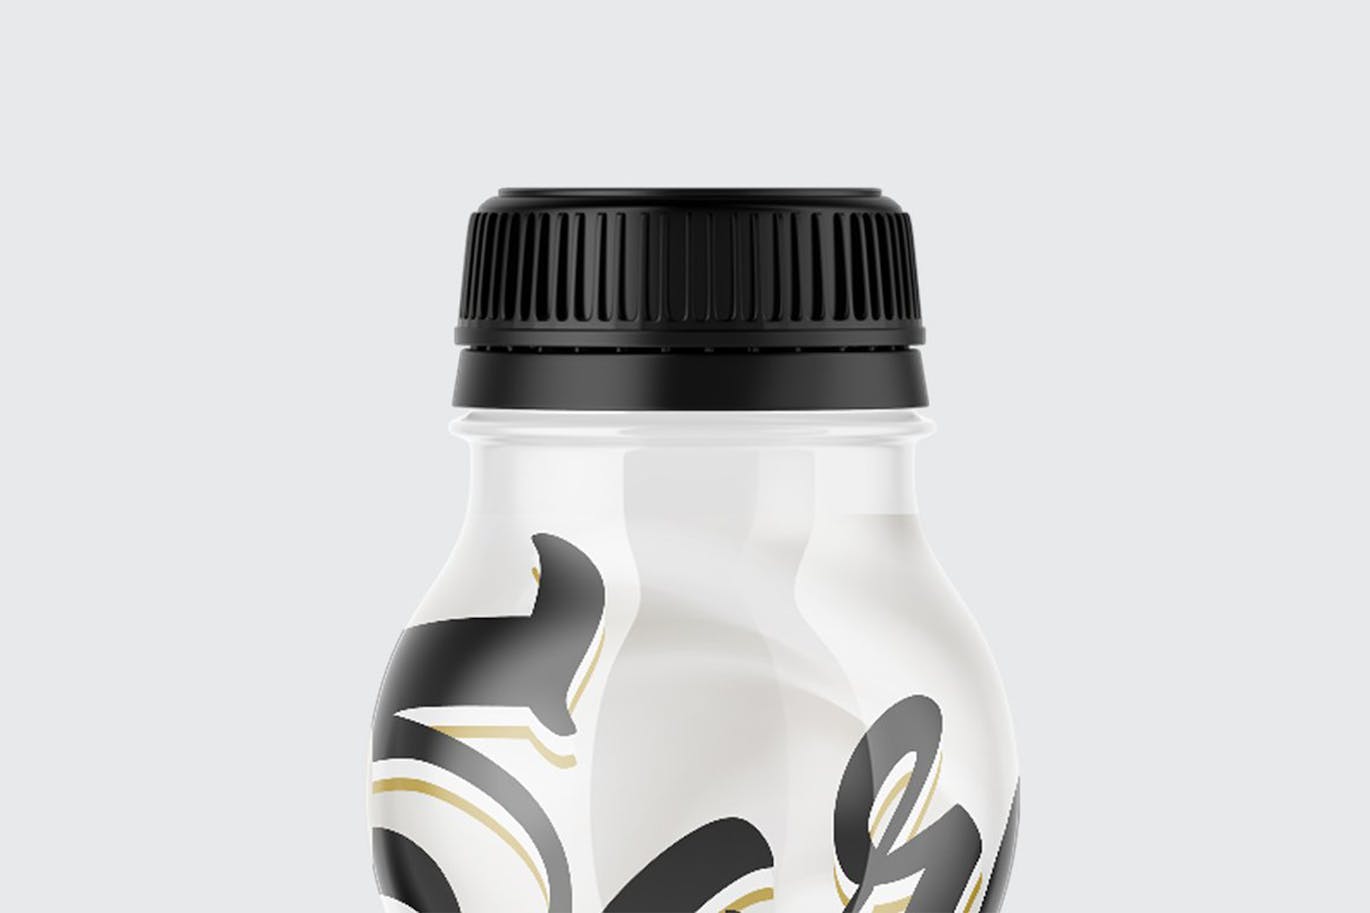 哑光酸奶瓶包装设计样机 Matte Yogurt Bottle Mockup 样机素材 第11张